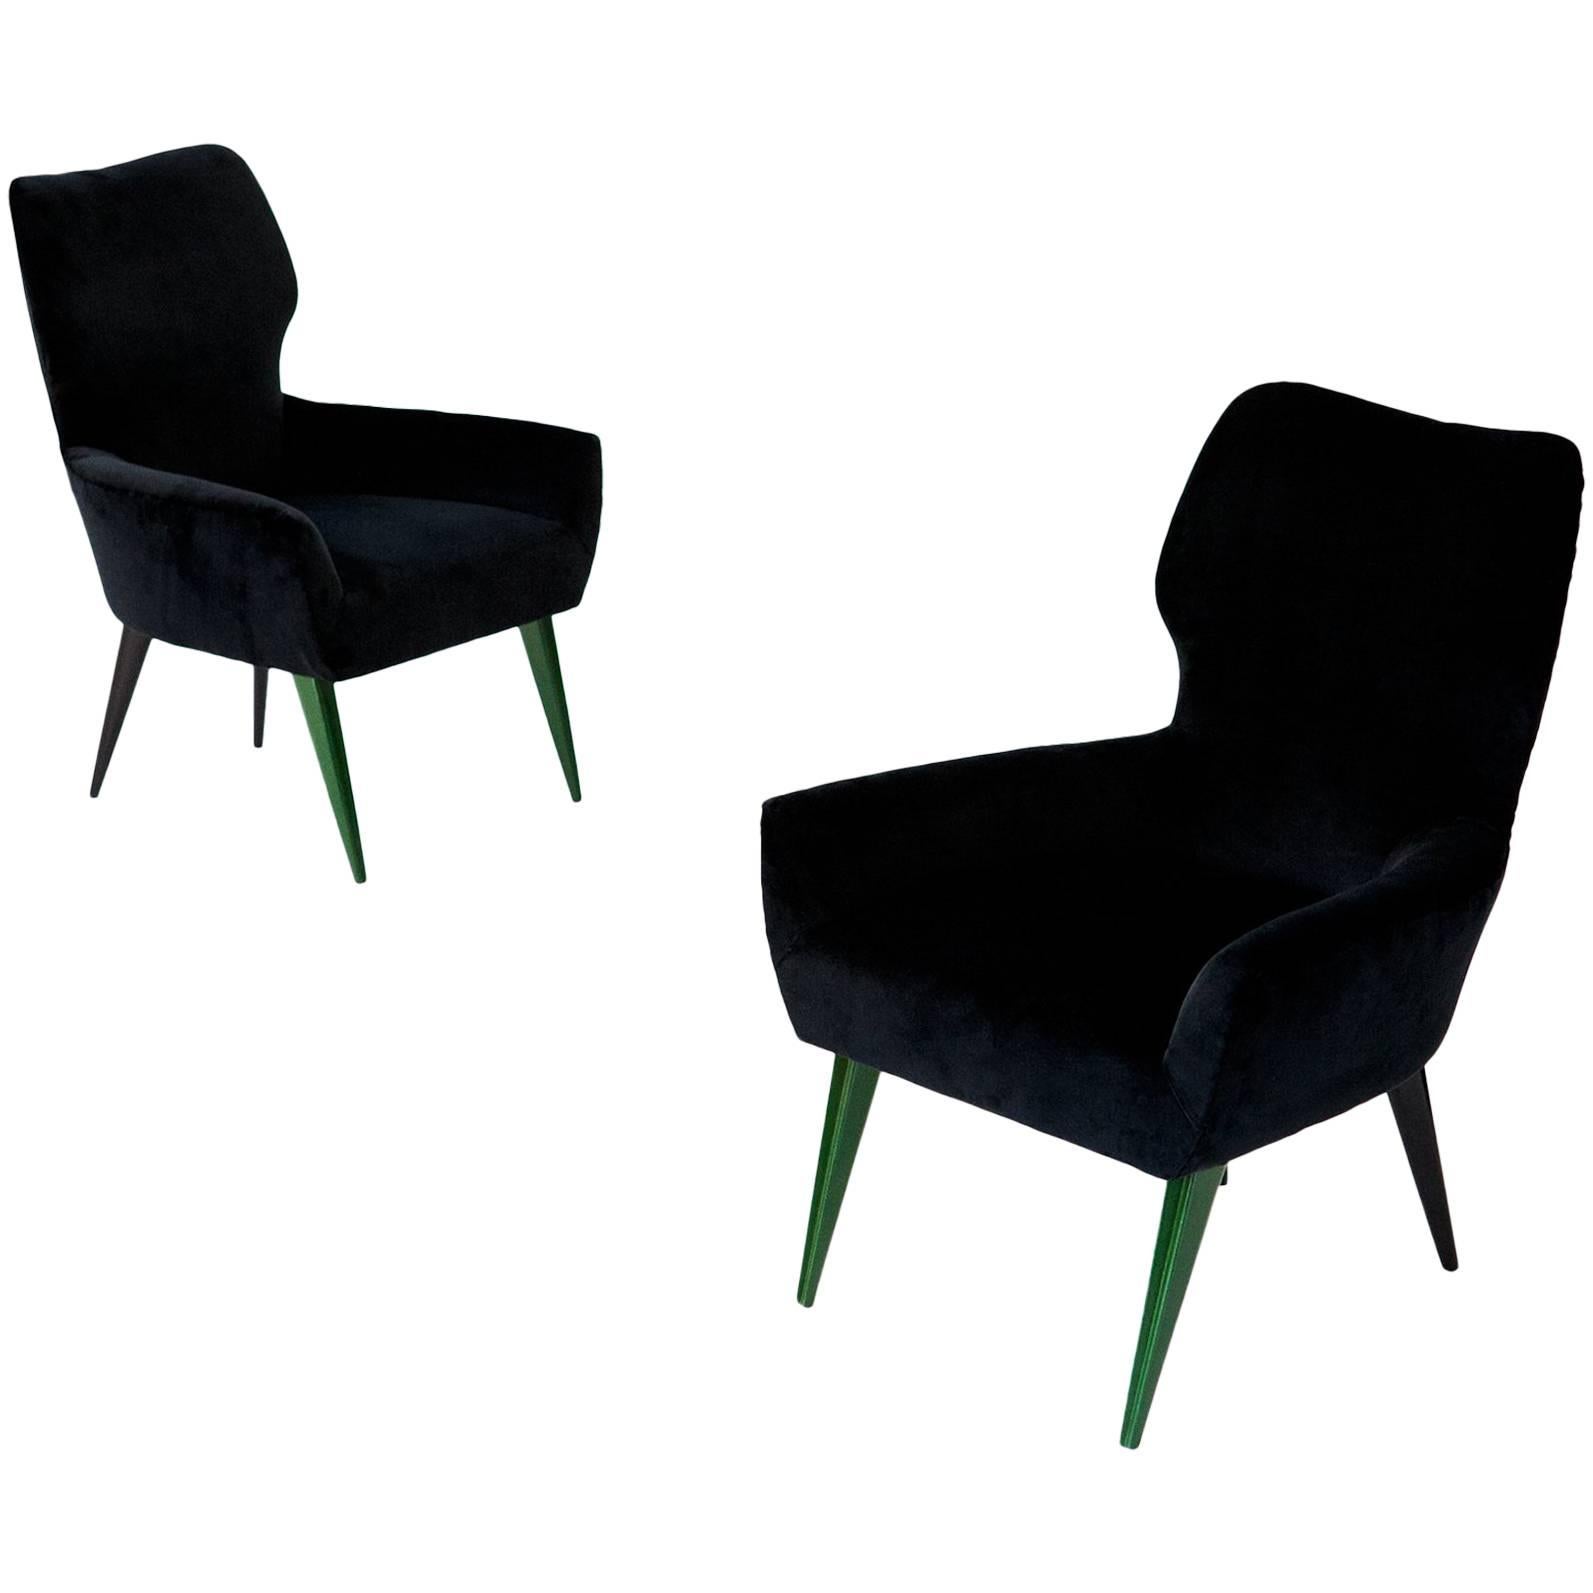 Pair of Italian Modern Easy Chairs with New Black Velvet Upholstery, 1950s